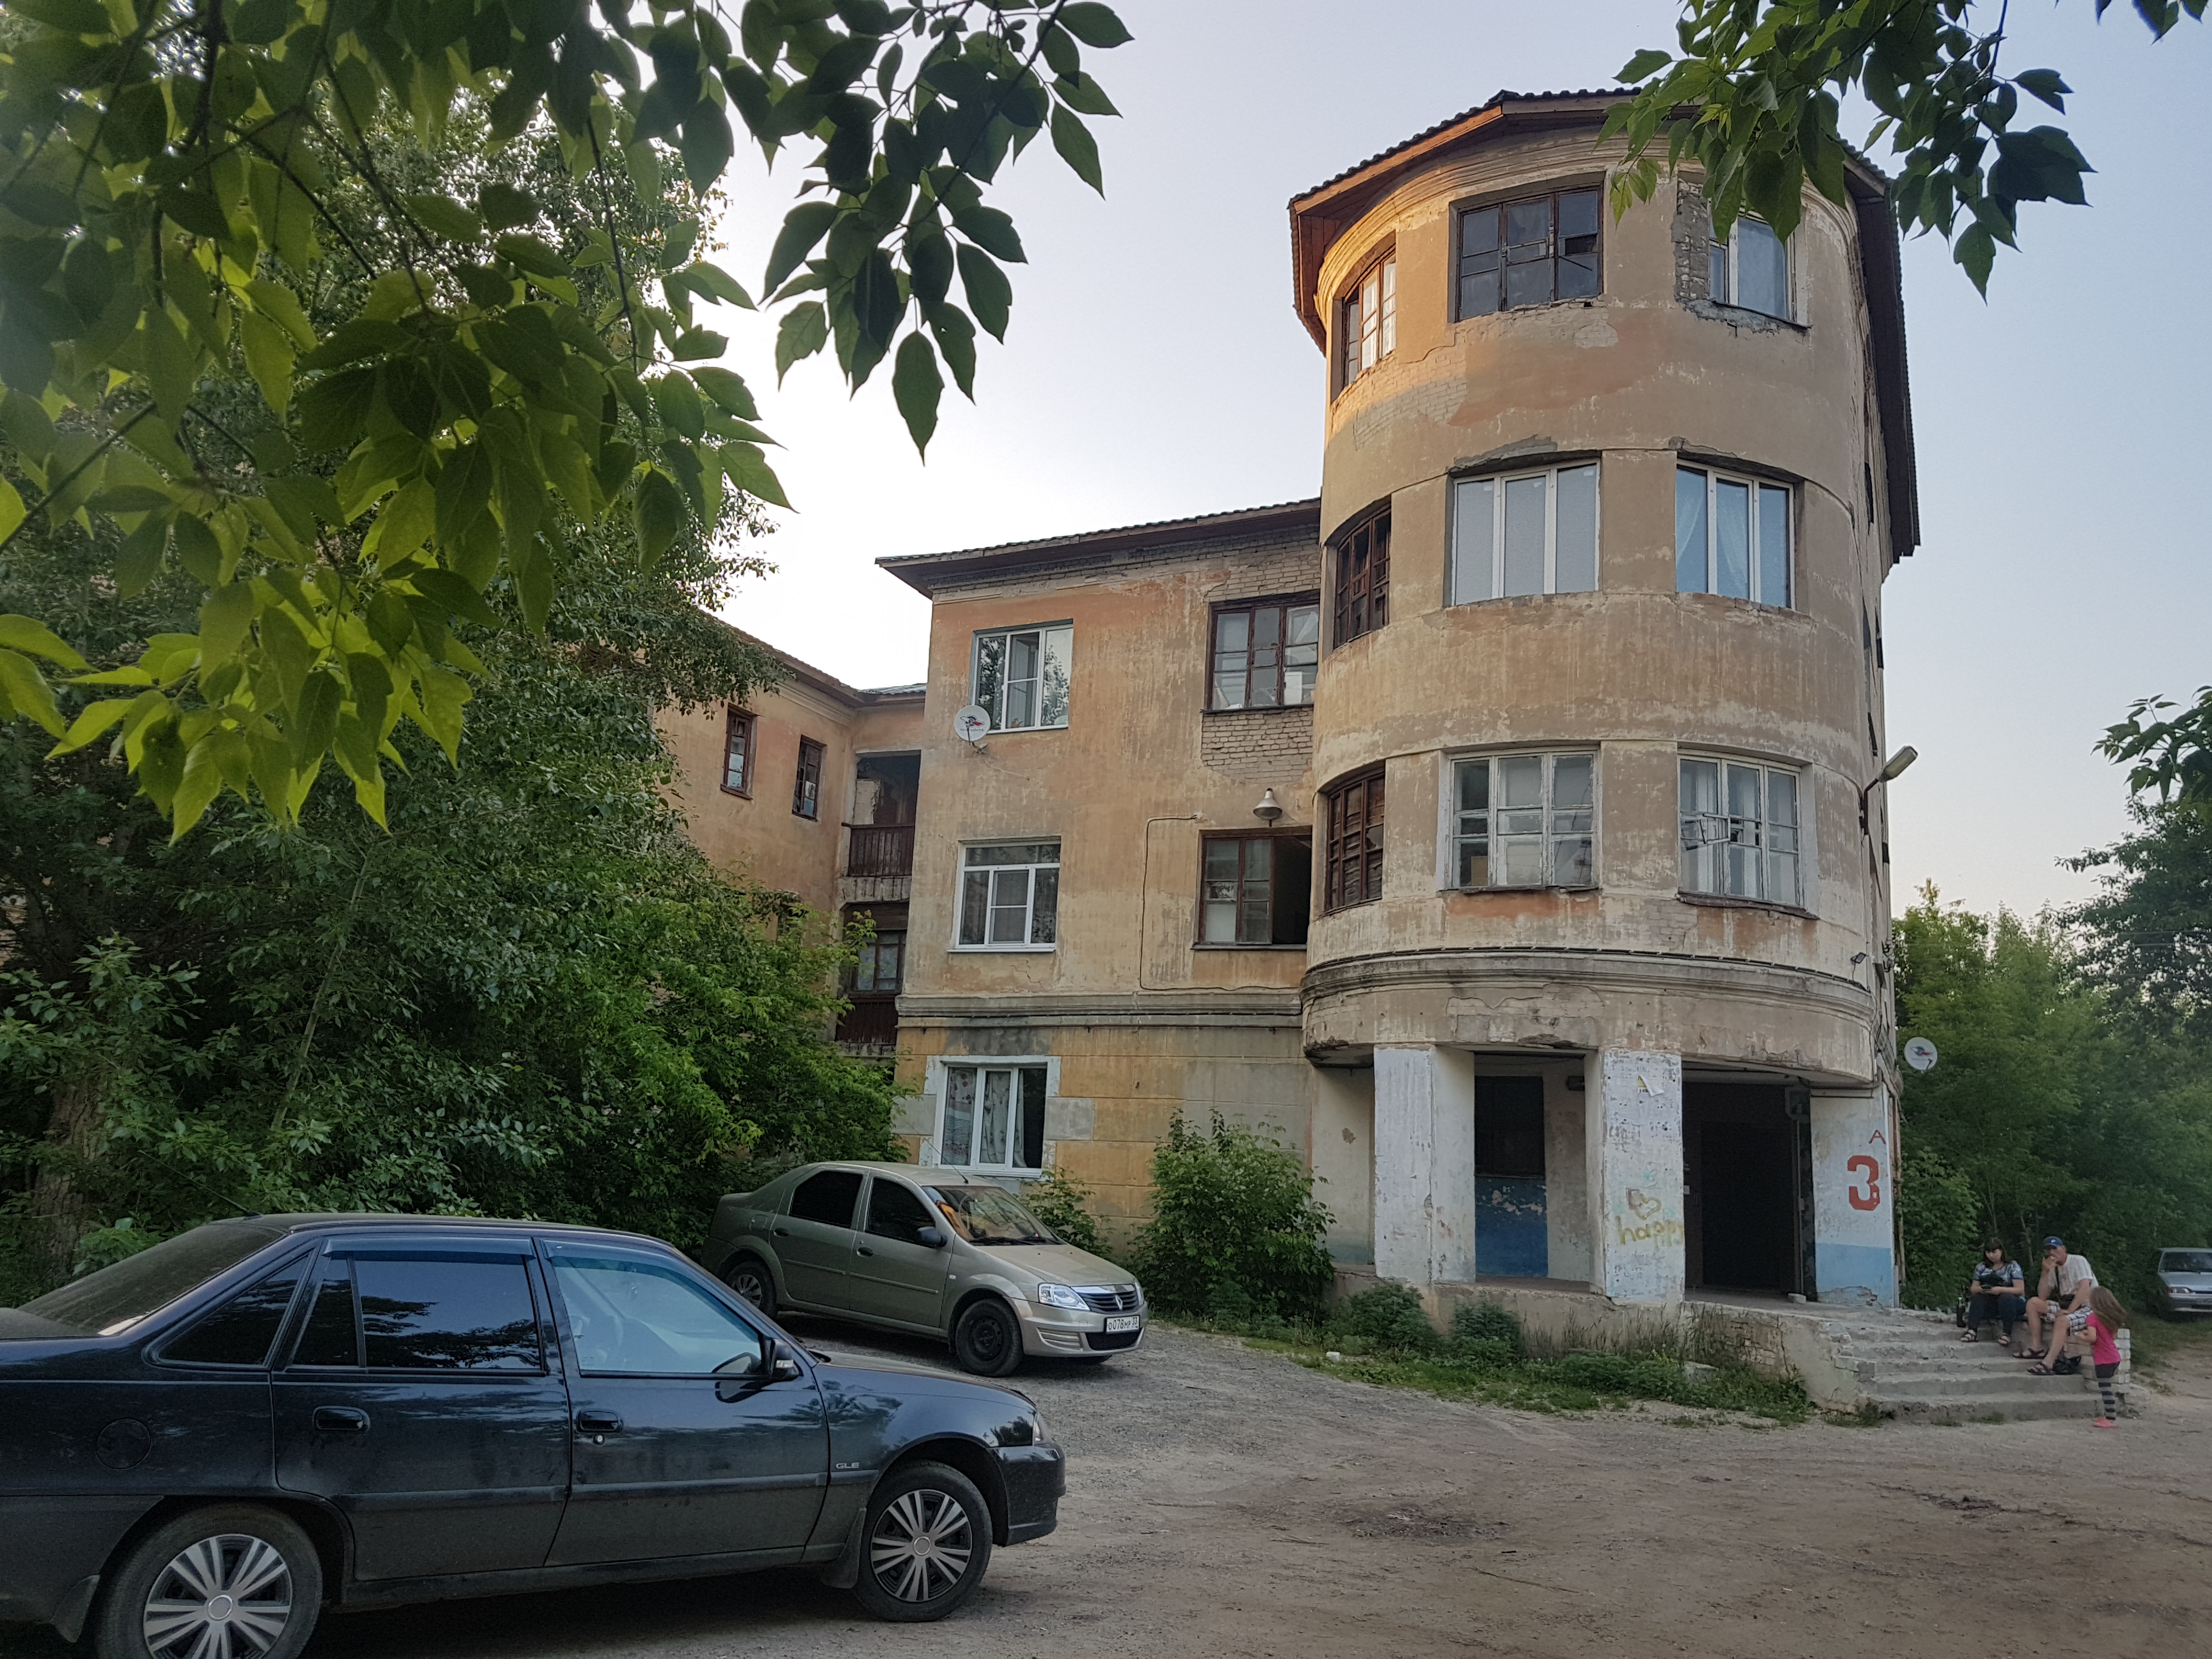 Определены подрядчики для капремонта шести многоквартирных домов – памятников архитектуры Дзержинска